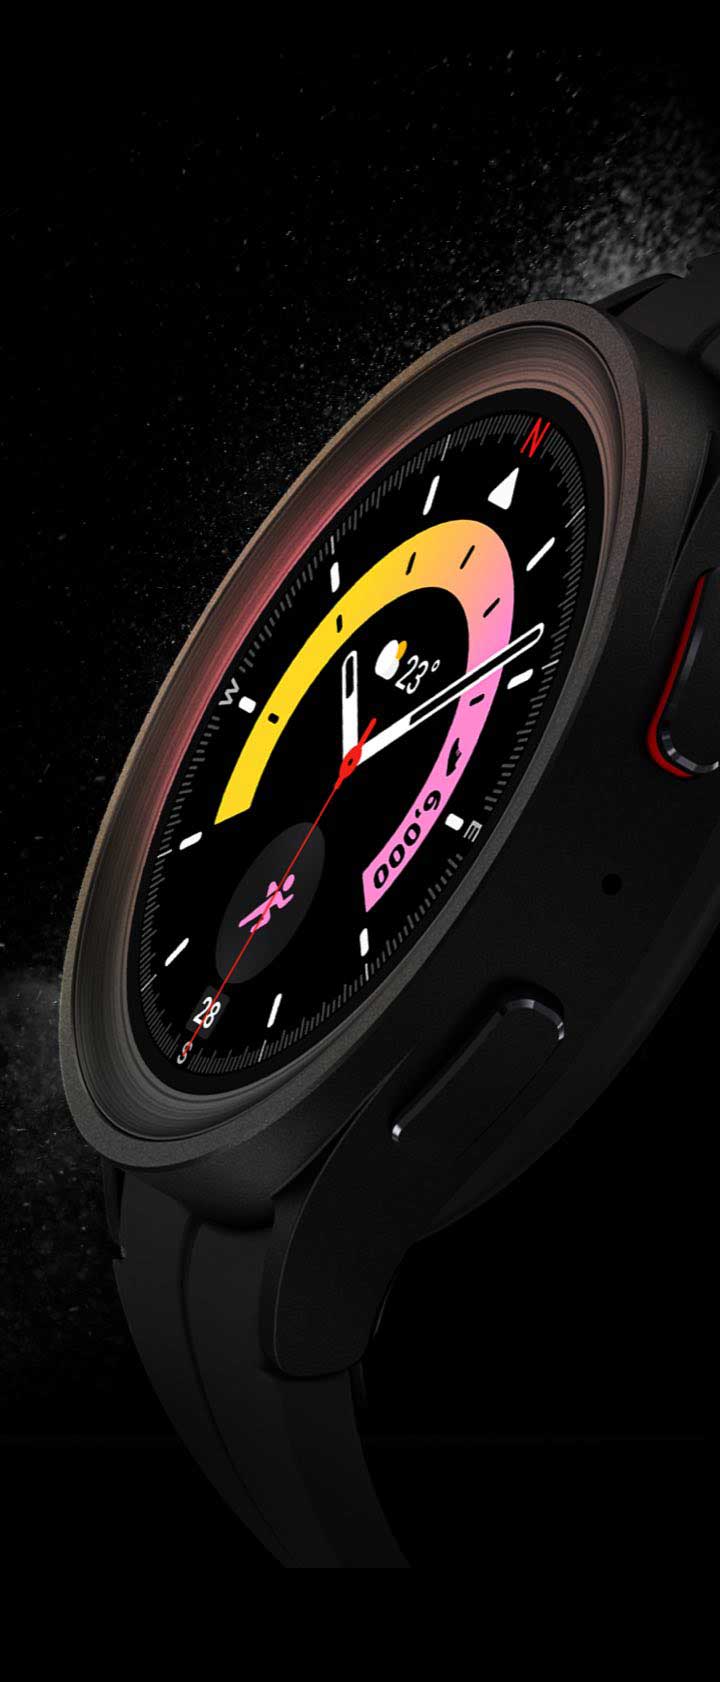 Galaxy Watch 5 Pro không chỉ là một chiếc đồng hồ thông minh thông thường, mà còn là một trợ thủ đắc lực trong việc theo dõi sức khỏe và tập luyện của bạn. Hãy truy cập ngay để khám phá toàn bộ tính năng vượt trội của chiếc đồng hồ này!